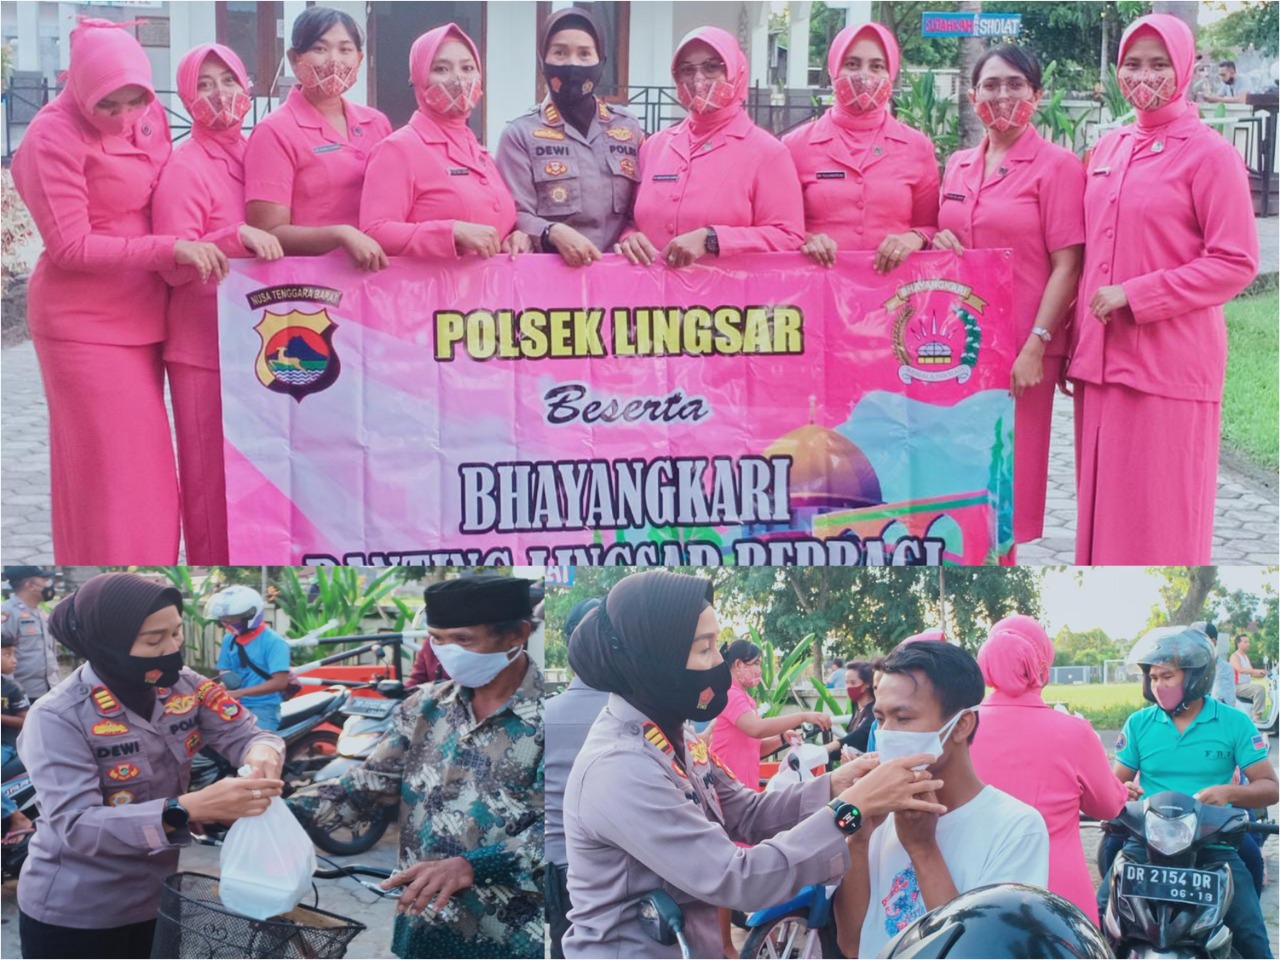 Kapolsek Lingsar Bersama Bhayangkari Berbagi Takjil Di Bulan Romadhon